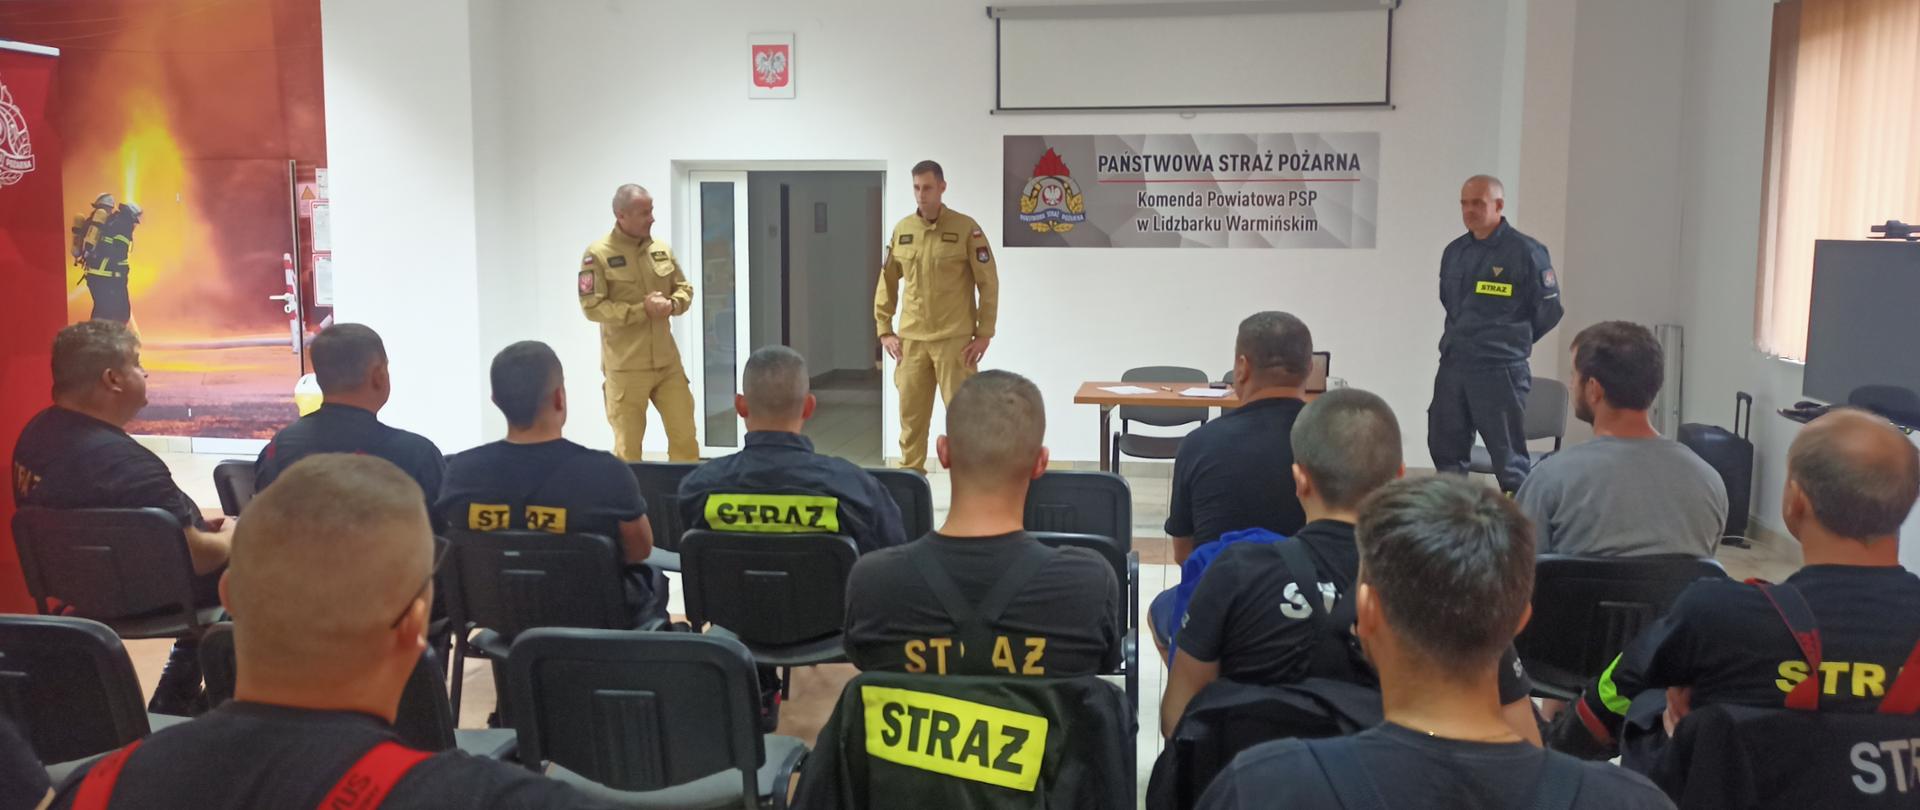 zdjęcie przedstawia Z--ce Komendanta Powiatowego PSP wraz z Przewodniczącym Komisji Egzaminacyjnej podczas odprawy z strażakami OSP przed egzaminem